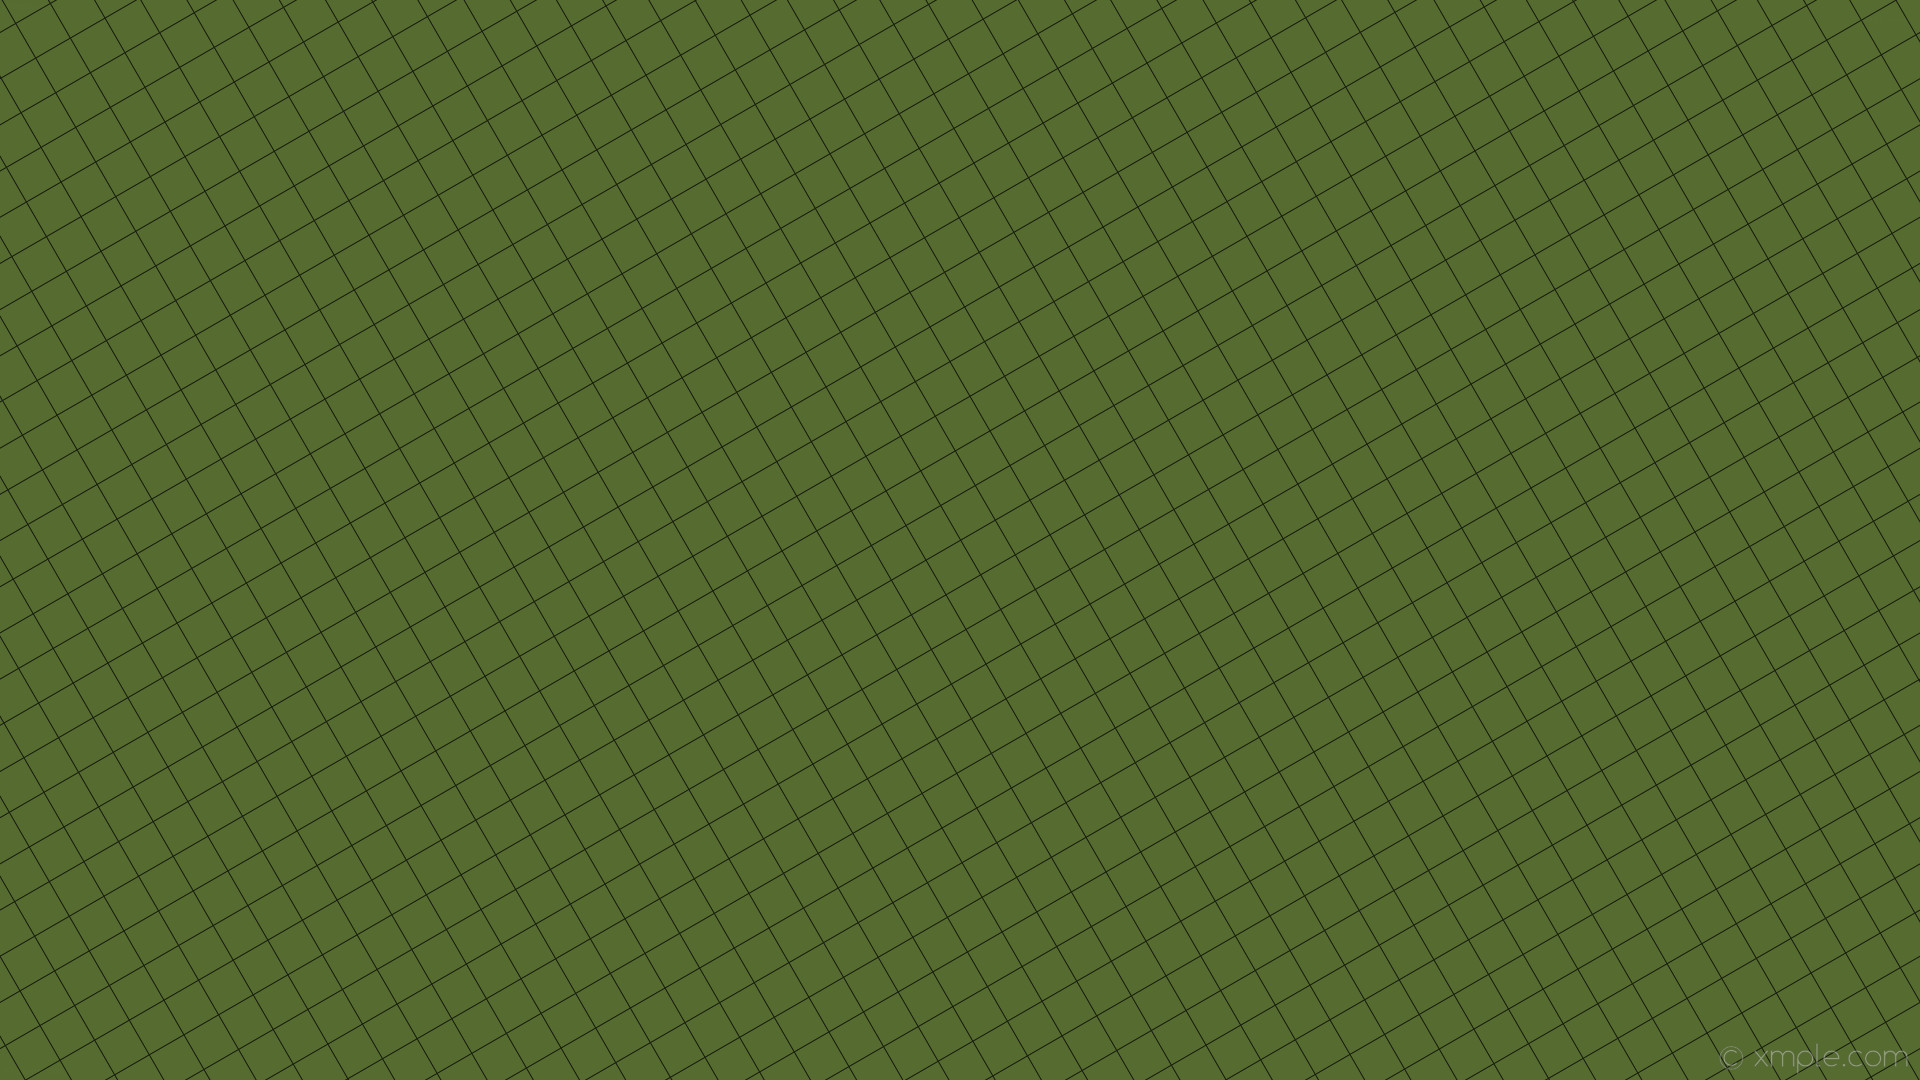 1920x1080 wallpaper grid black graph paper green dark olive green #556b2f #000000 30Â°  1px